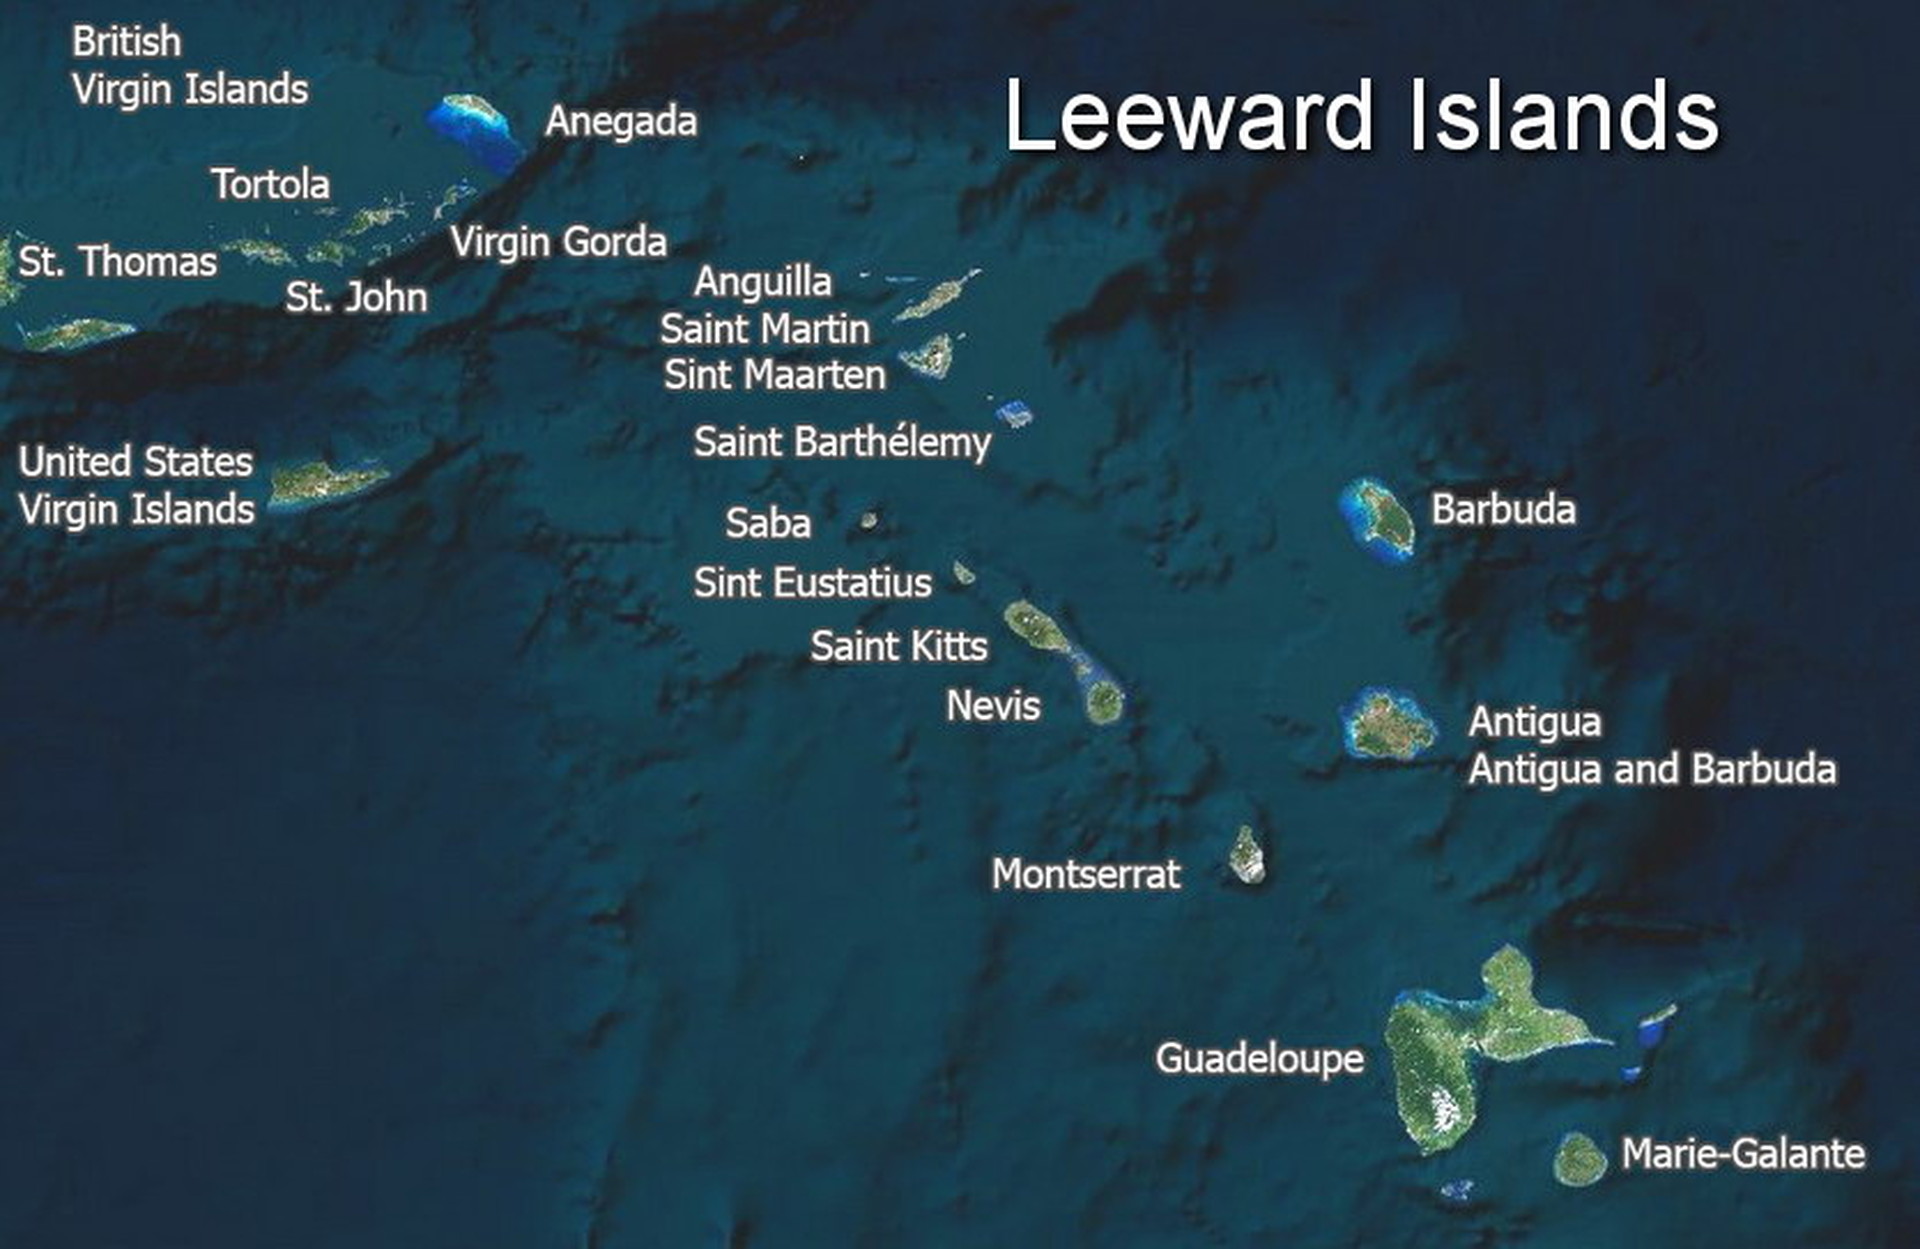 The Leeward Islands map